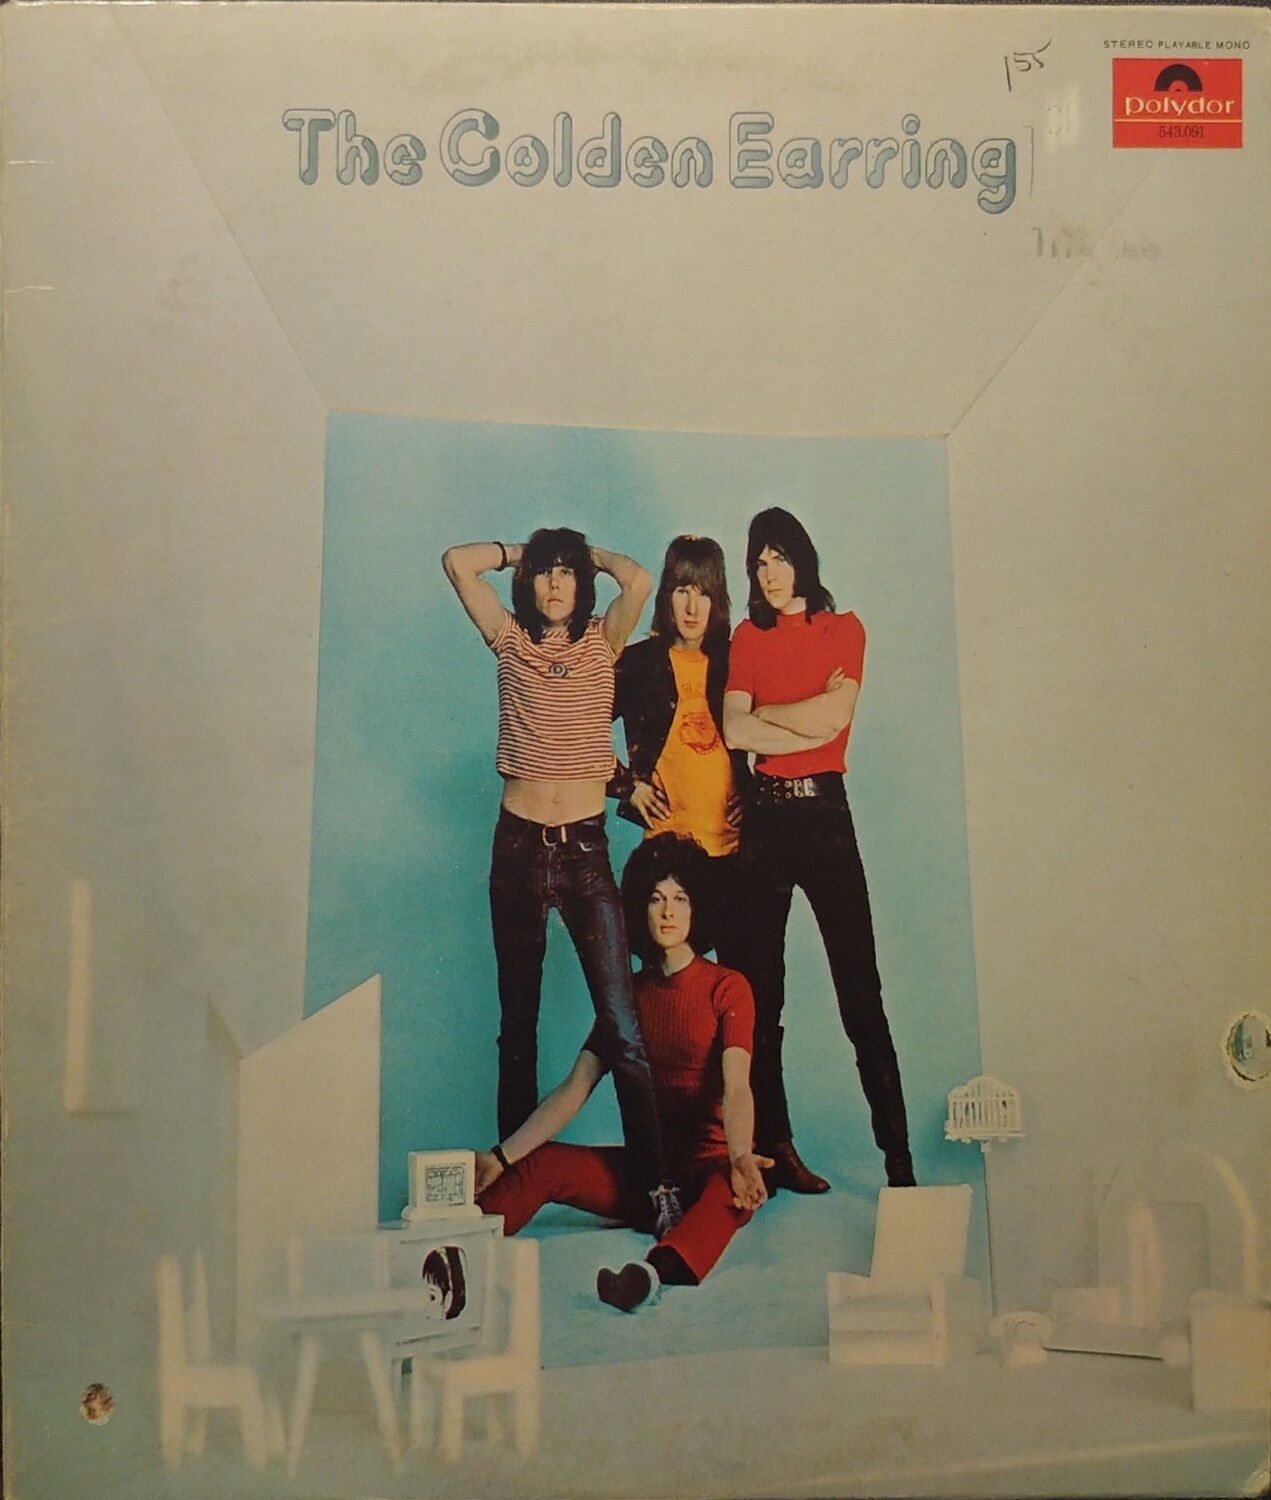 The Golden Earring - The Golden Earring